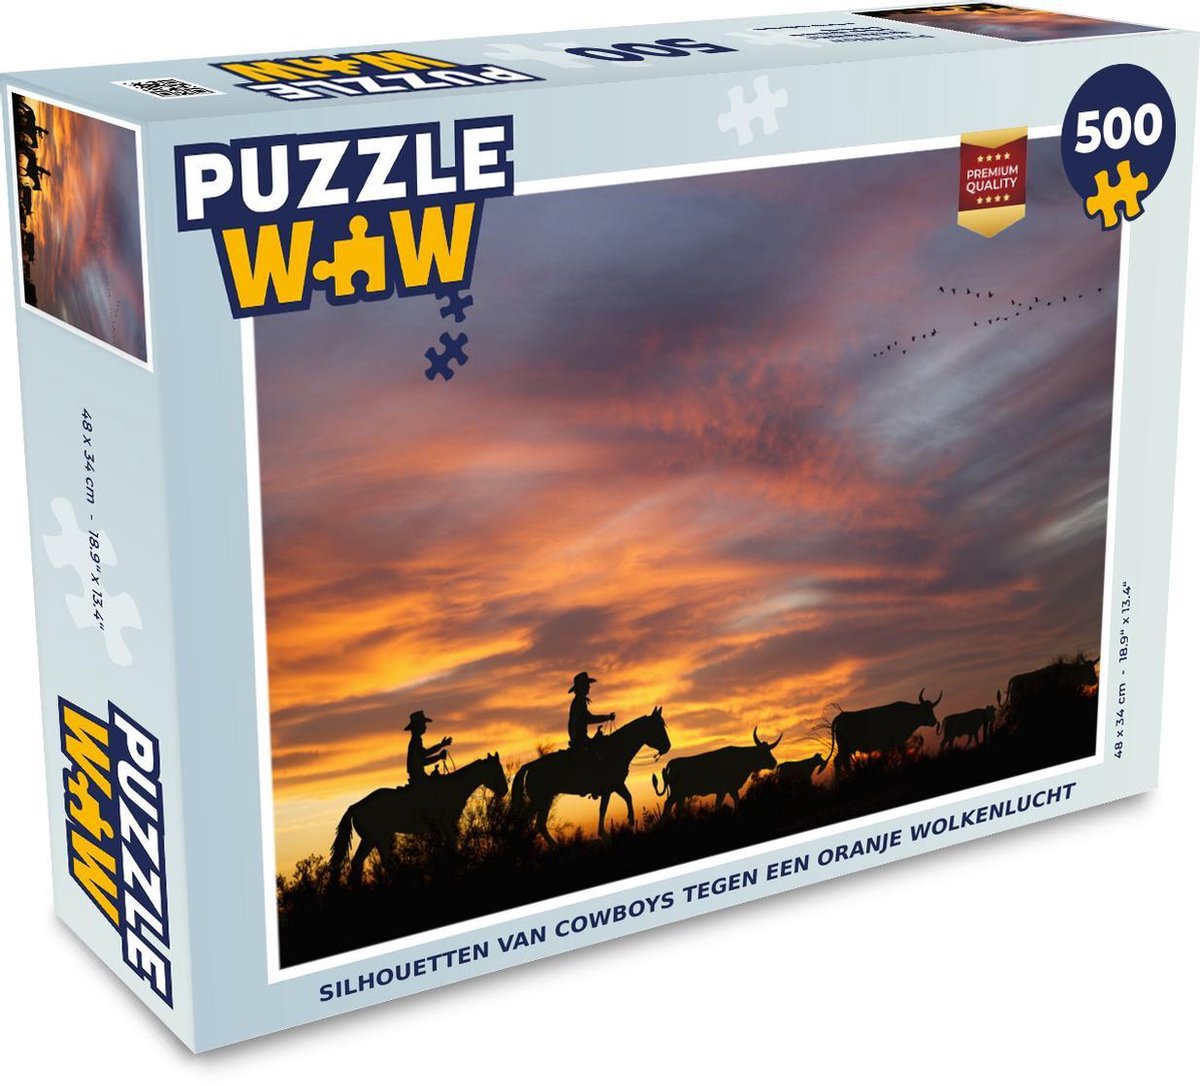 Afbeelding van product Puzzel 500 stukjes Cowboys - Silhouetten van cowboys tegen een oranje wolkenlucht - PuzzleWow heeft +100000 puzzels